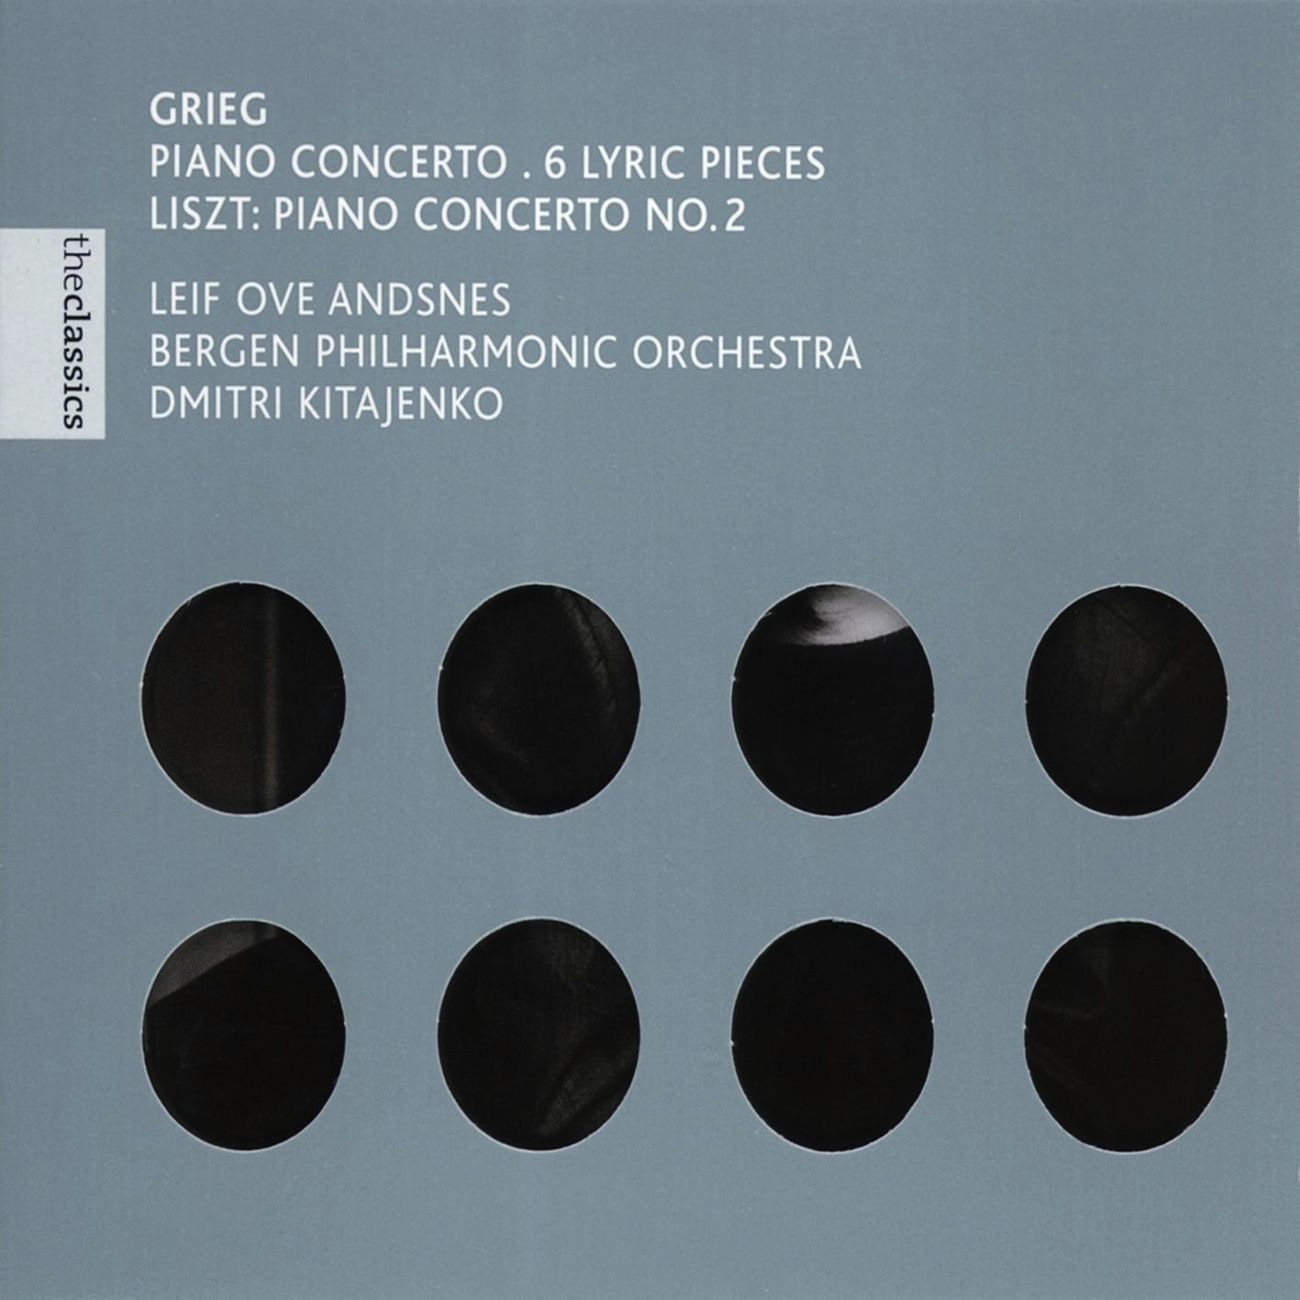 Piano Concerto No. 2 in A Major, S.125: I. Adagio - Allegro agitato